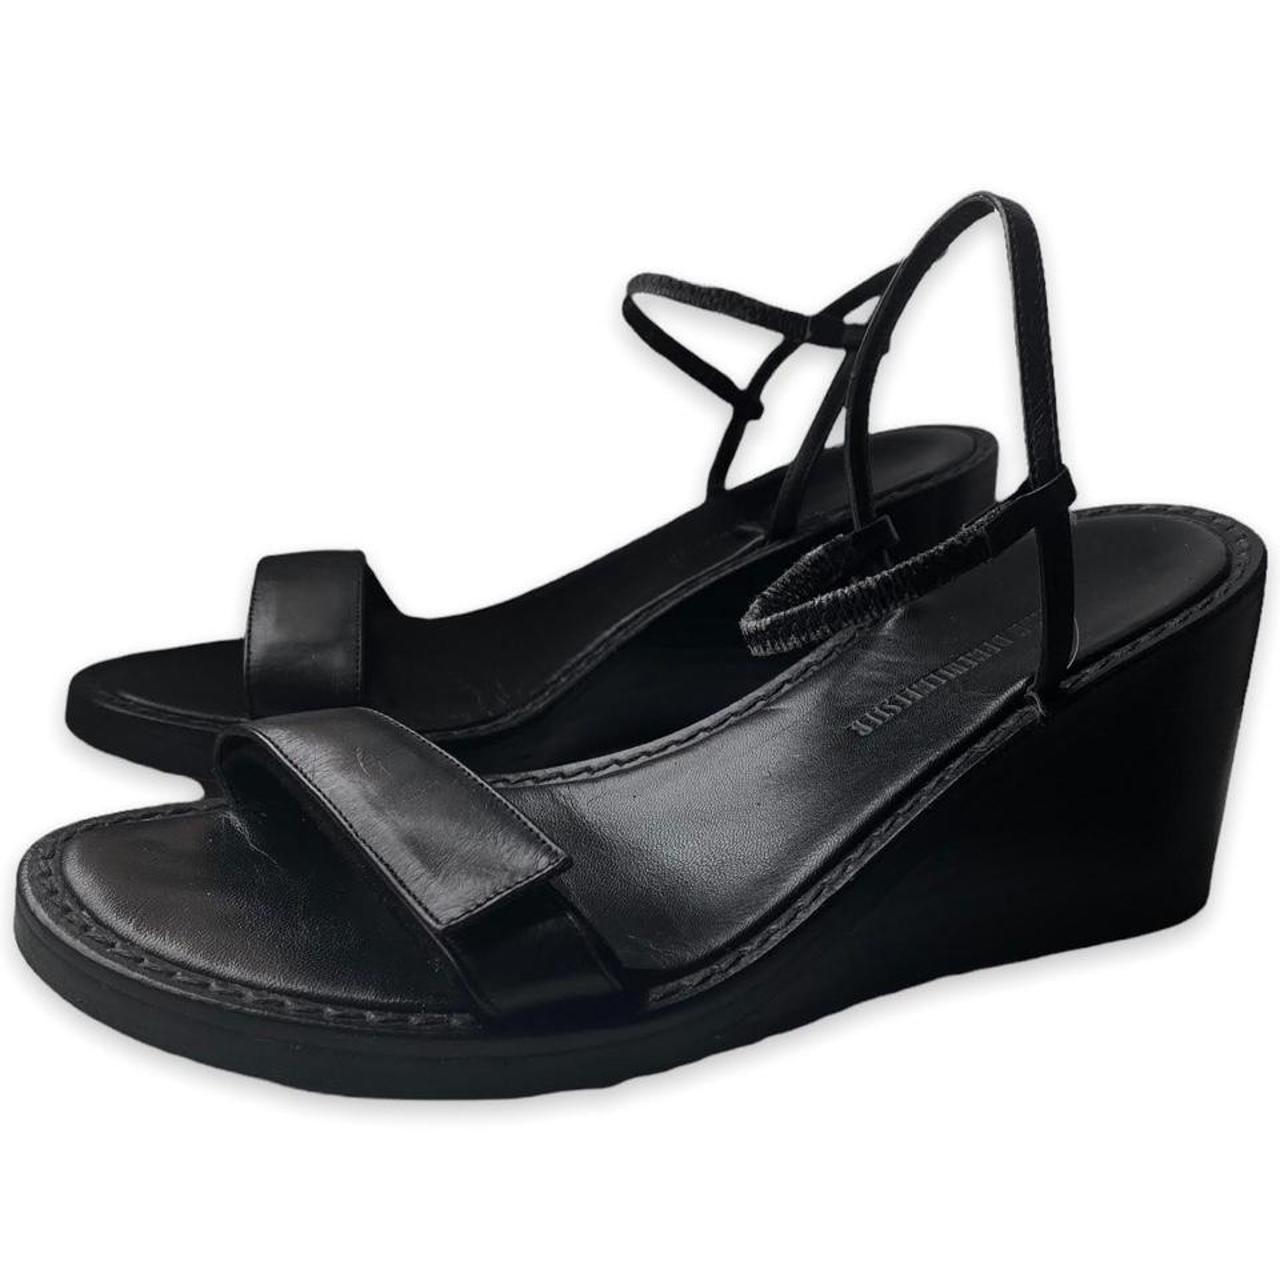 Ann Demeulemeester Women's Black Sandals